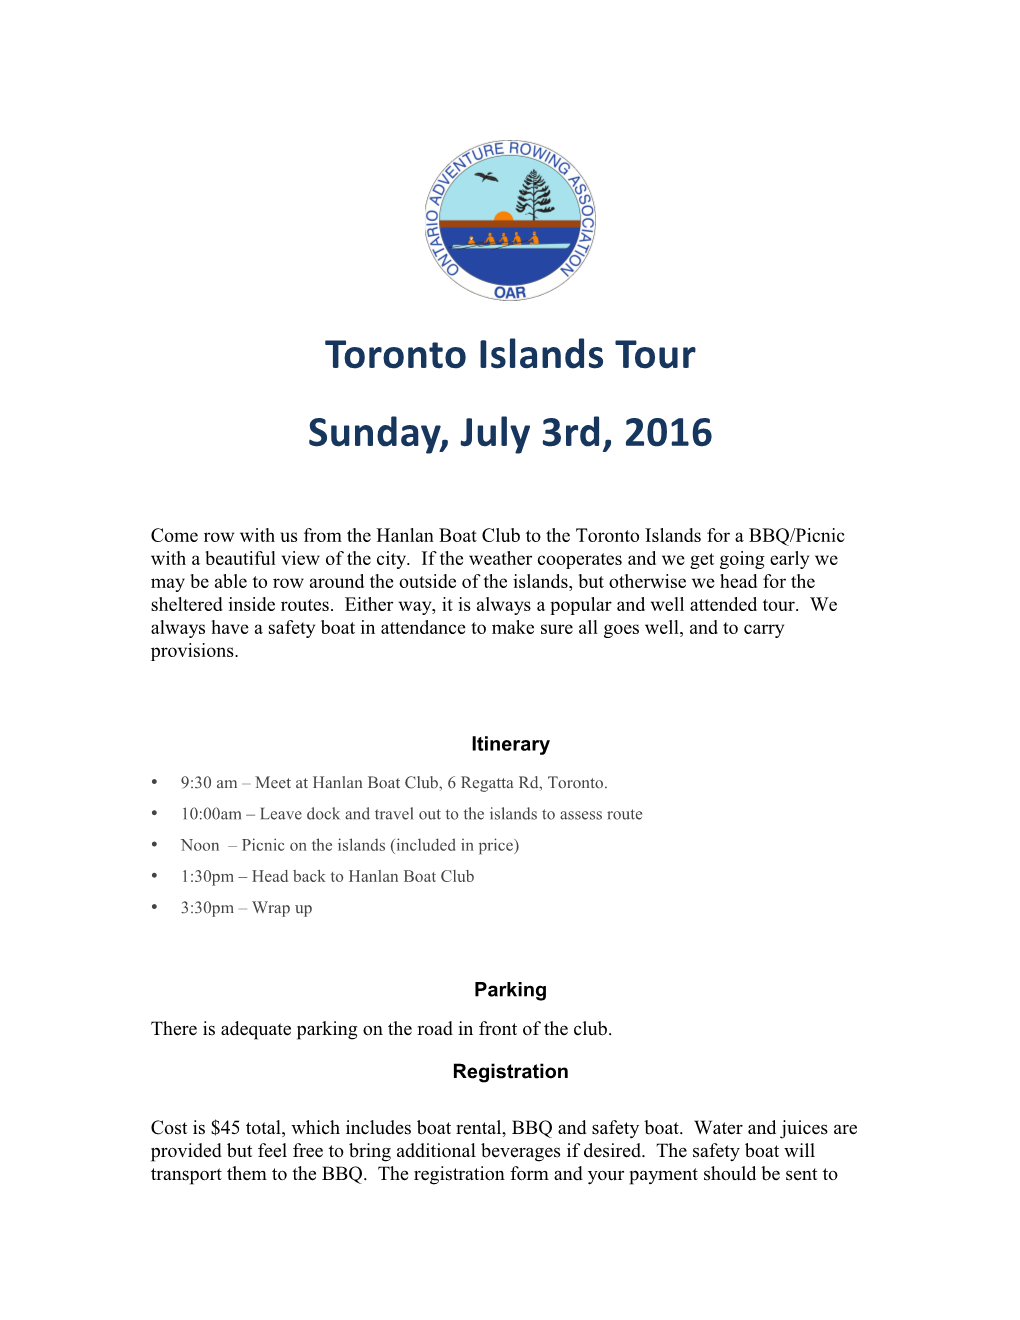 9:30 Am Meet at Hanlan Boat Club, 6 Regatta Rd, Toronto